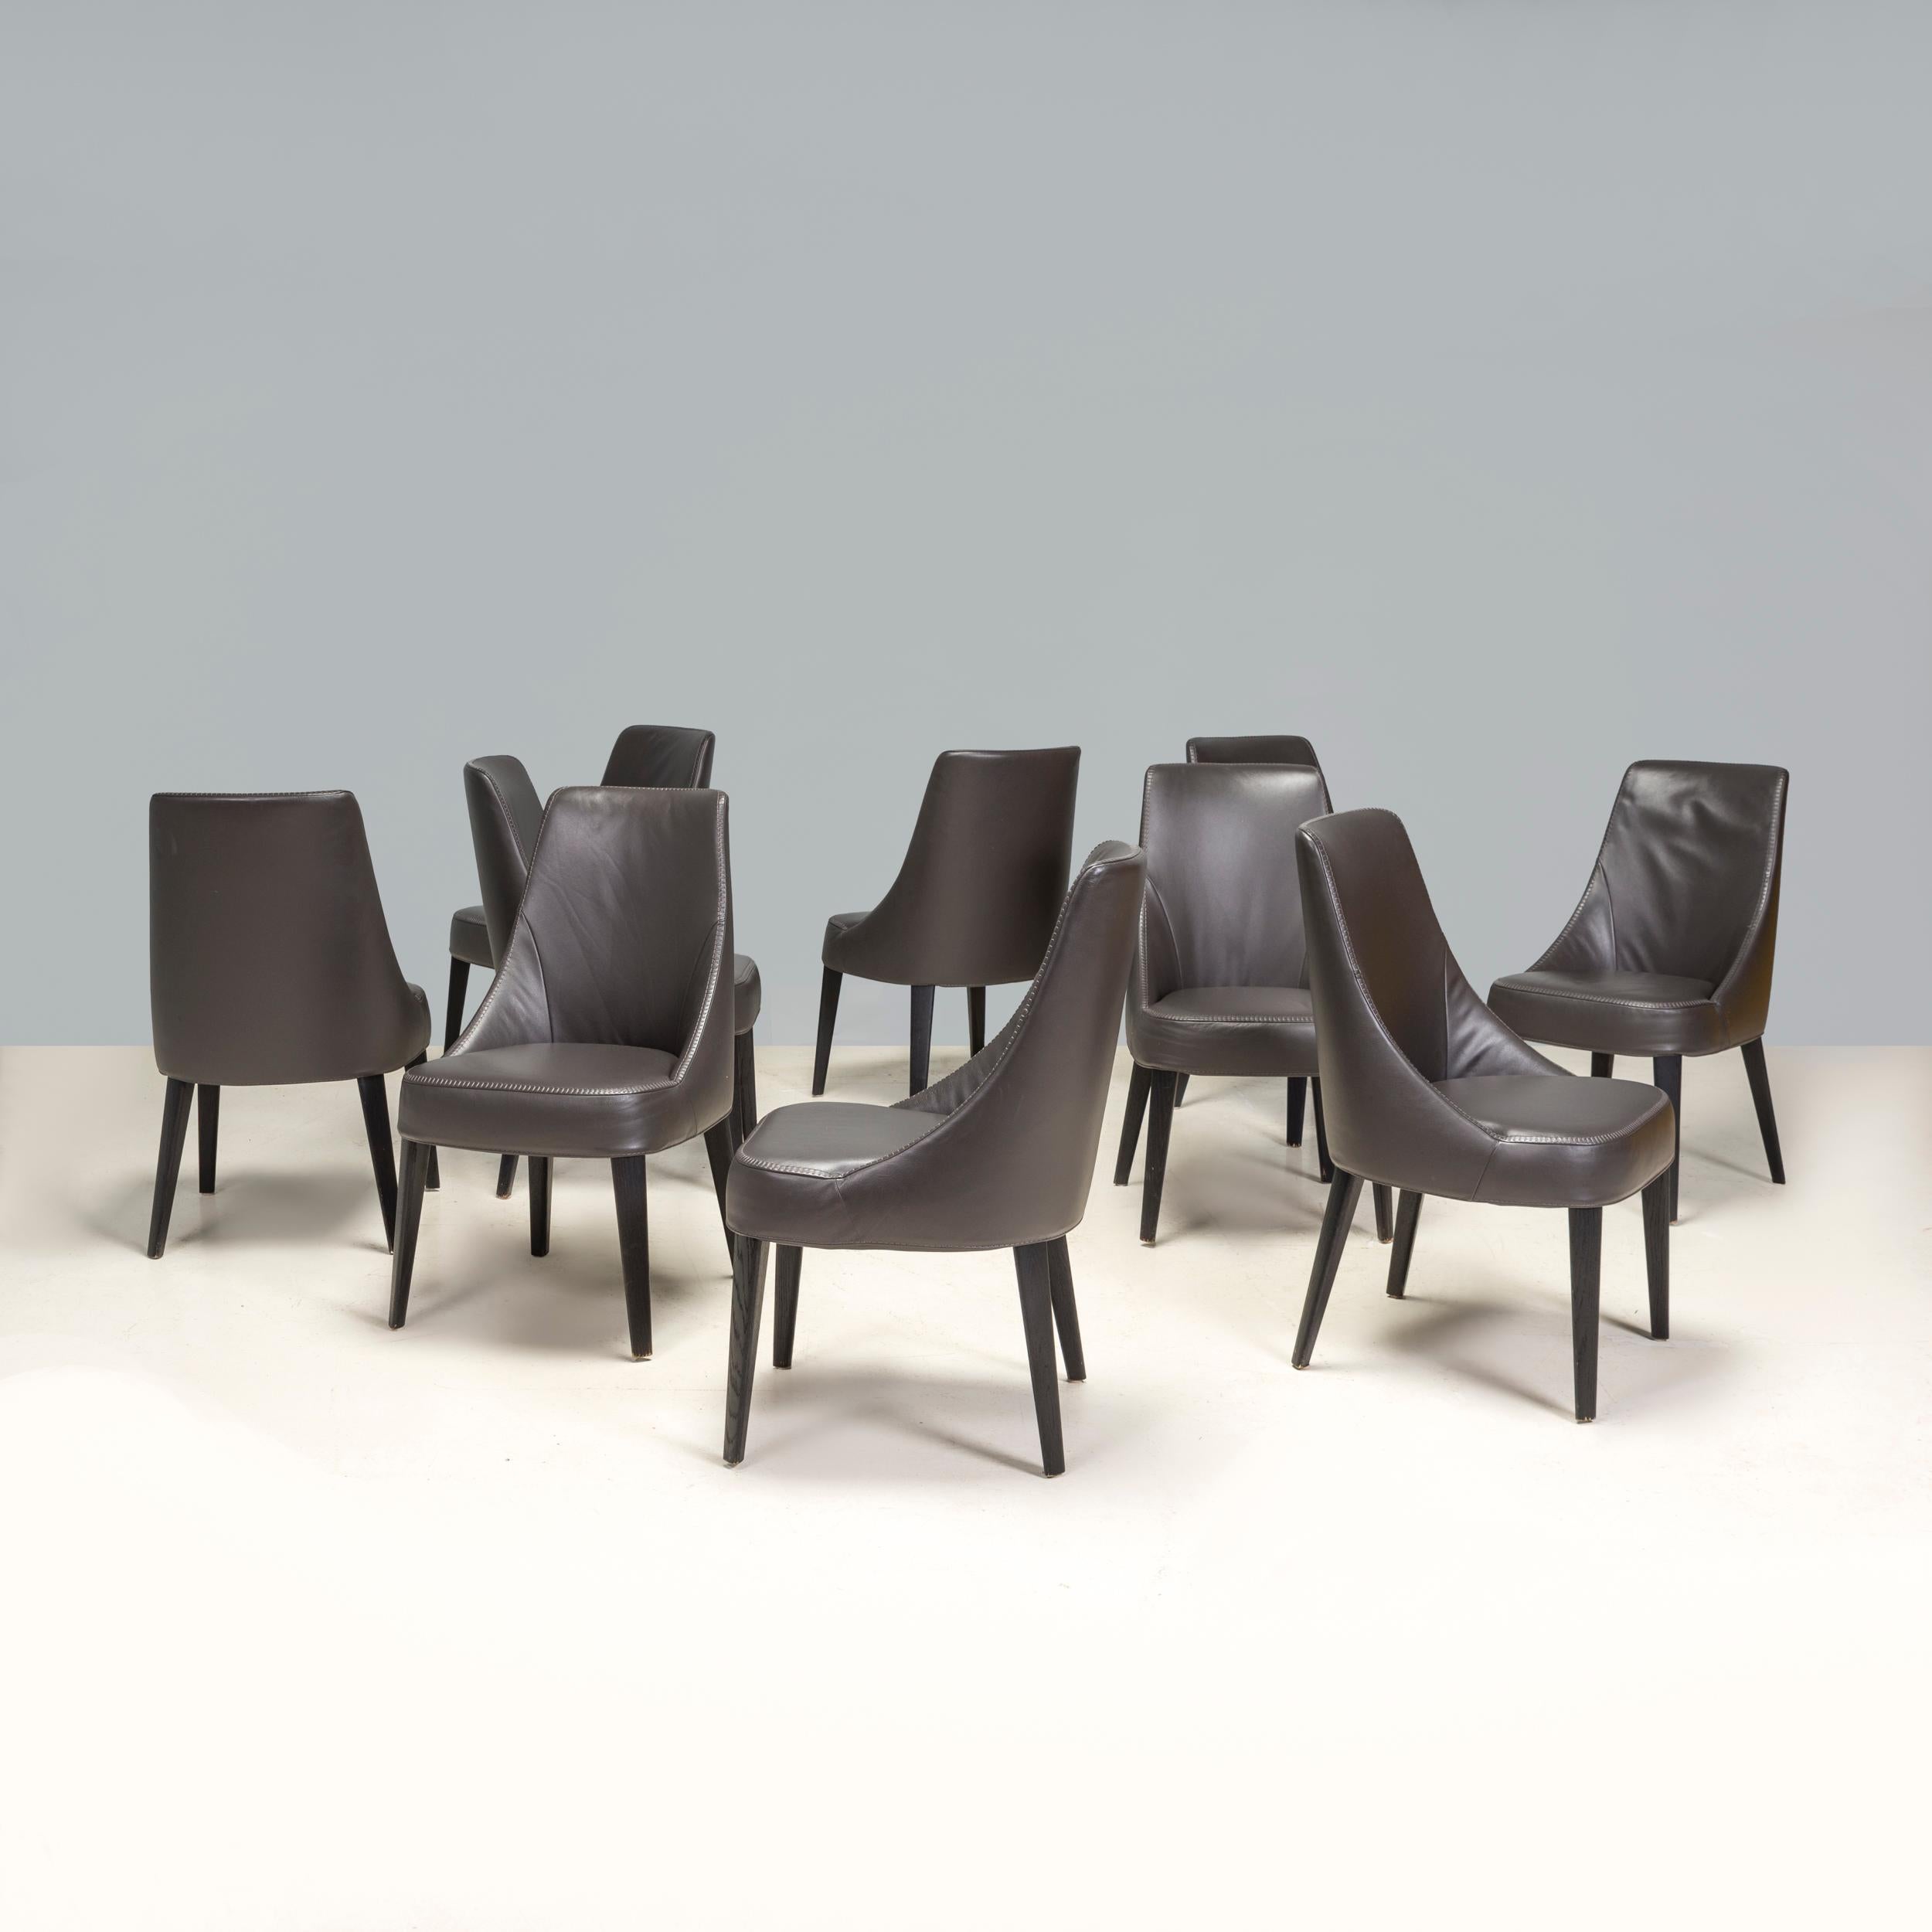 Conçue à l'origine par Antonio Citterio pour Maxalto en 2008, la chaise de salle à manger Febo est un fantastique exemple de design italien moderne. 

Les chaises sont construites à partir d'un cadre en acier tubulaire et sont finies avec des pieds